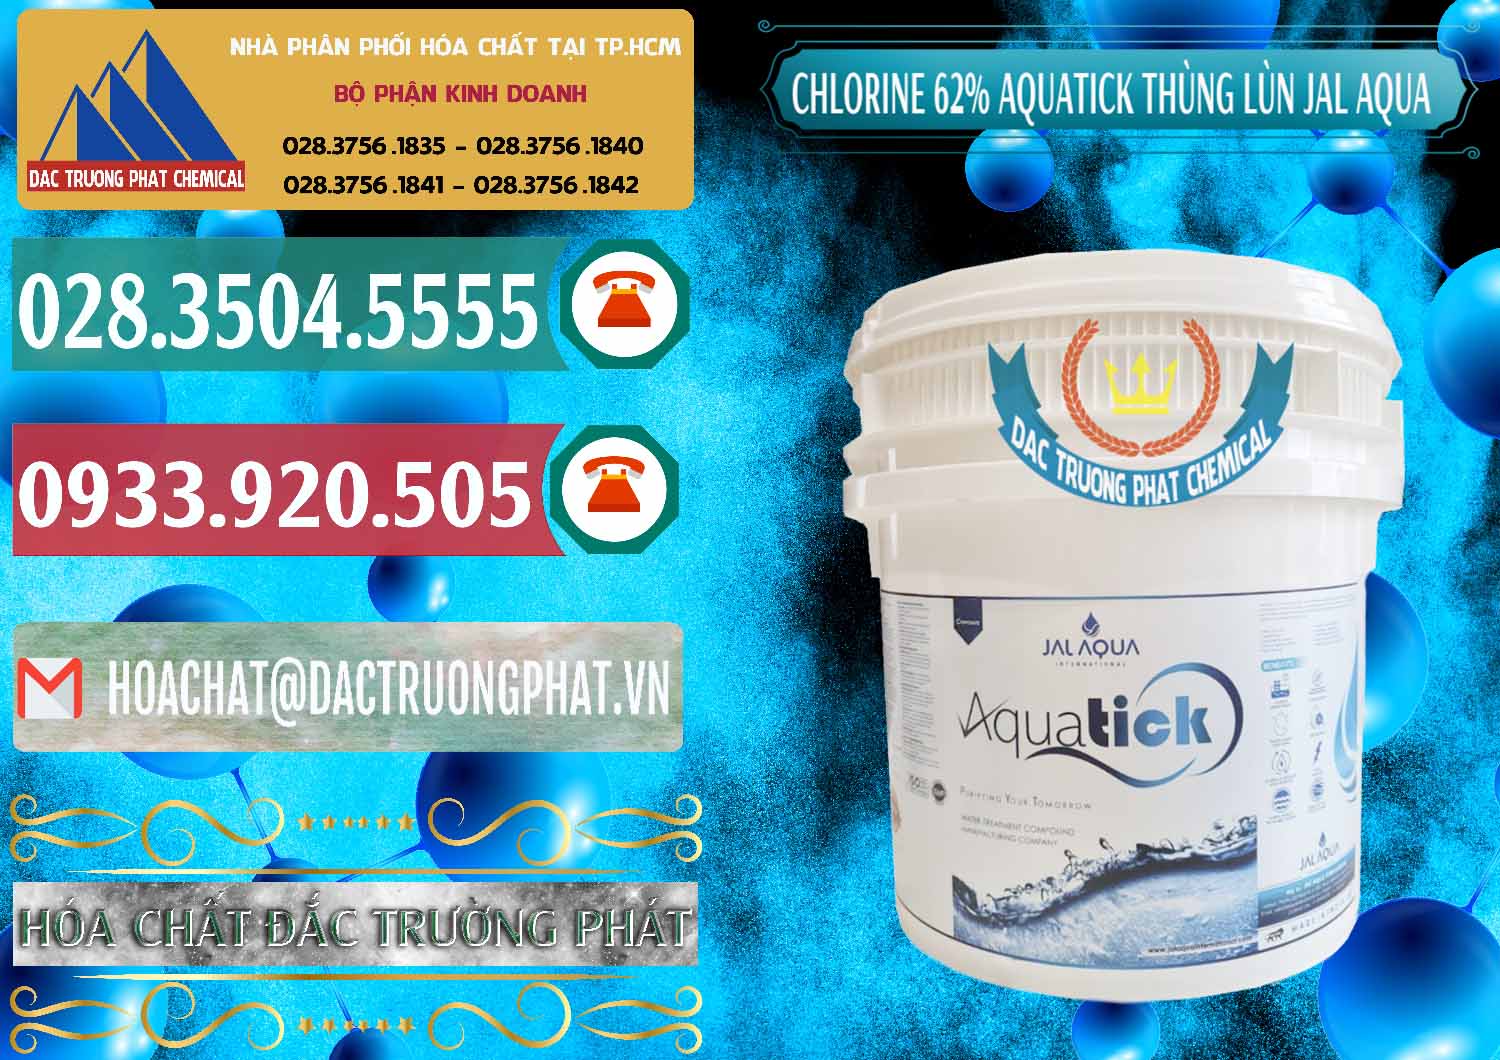 Cty chuyên cung ứng - bán Chlorine – Clorin 62% Aquatick Thùng Lùn Jal Aqua Ấn Độ India - 0238 - Cty cung ứng - phân phối hóa chất tại TP.HCM - muabanhoachat.vn